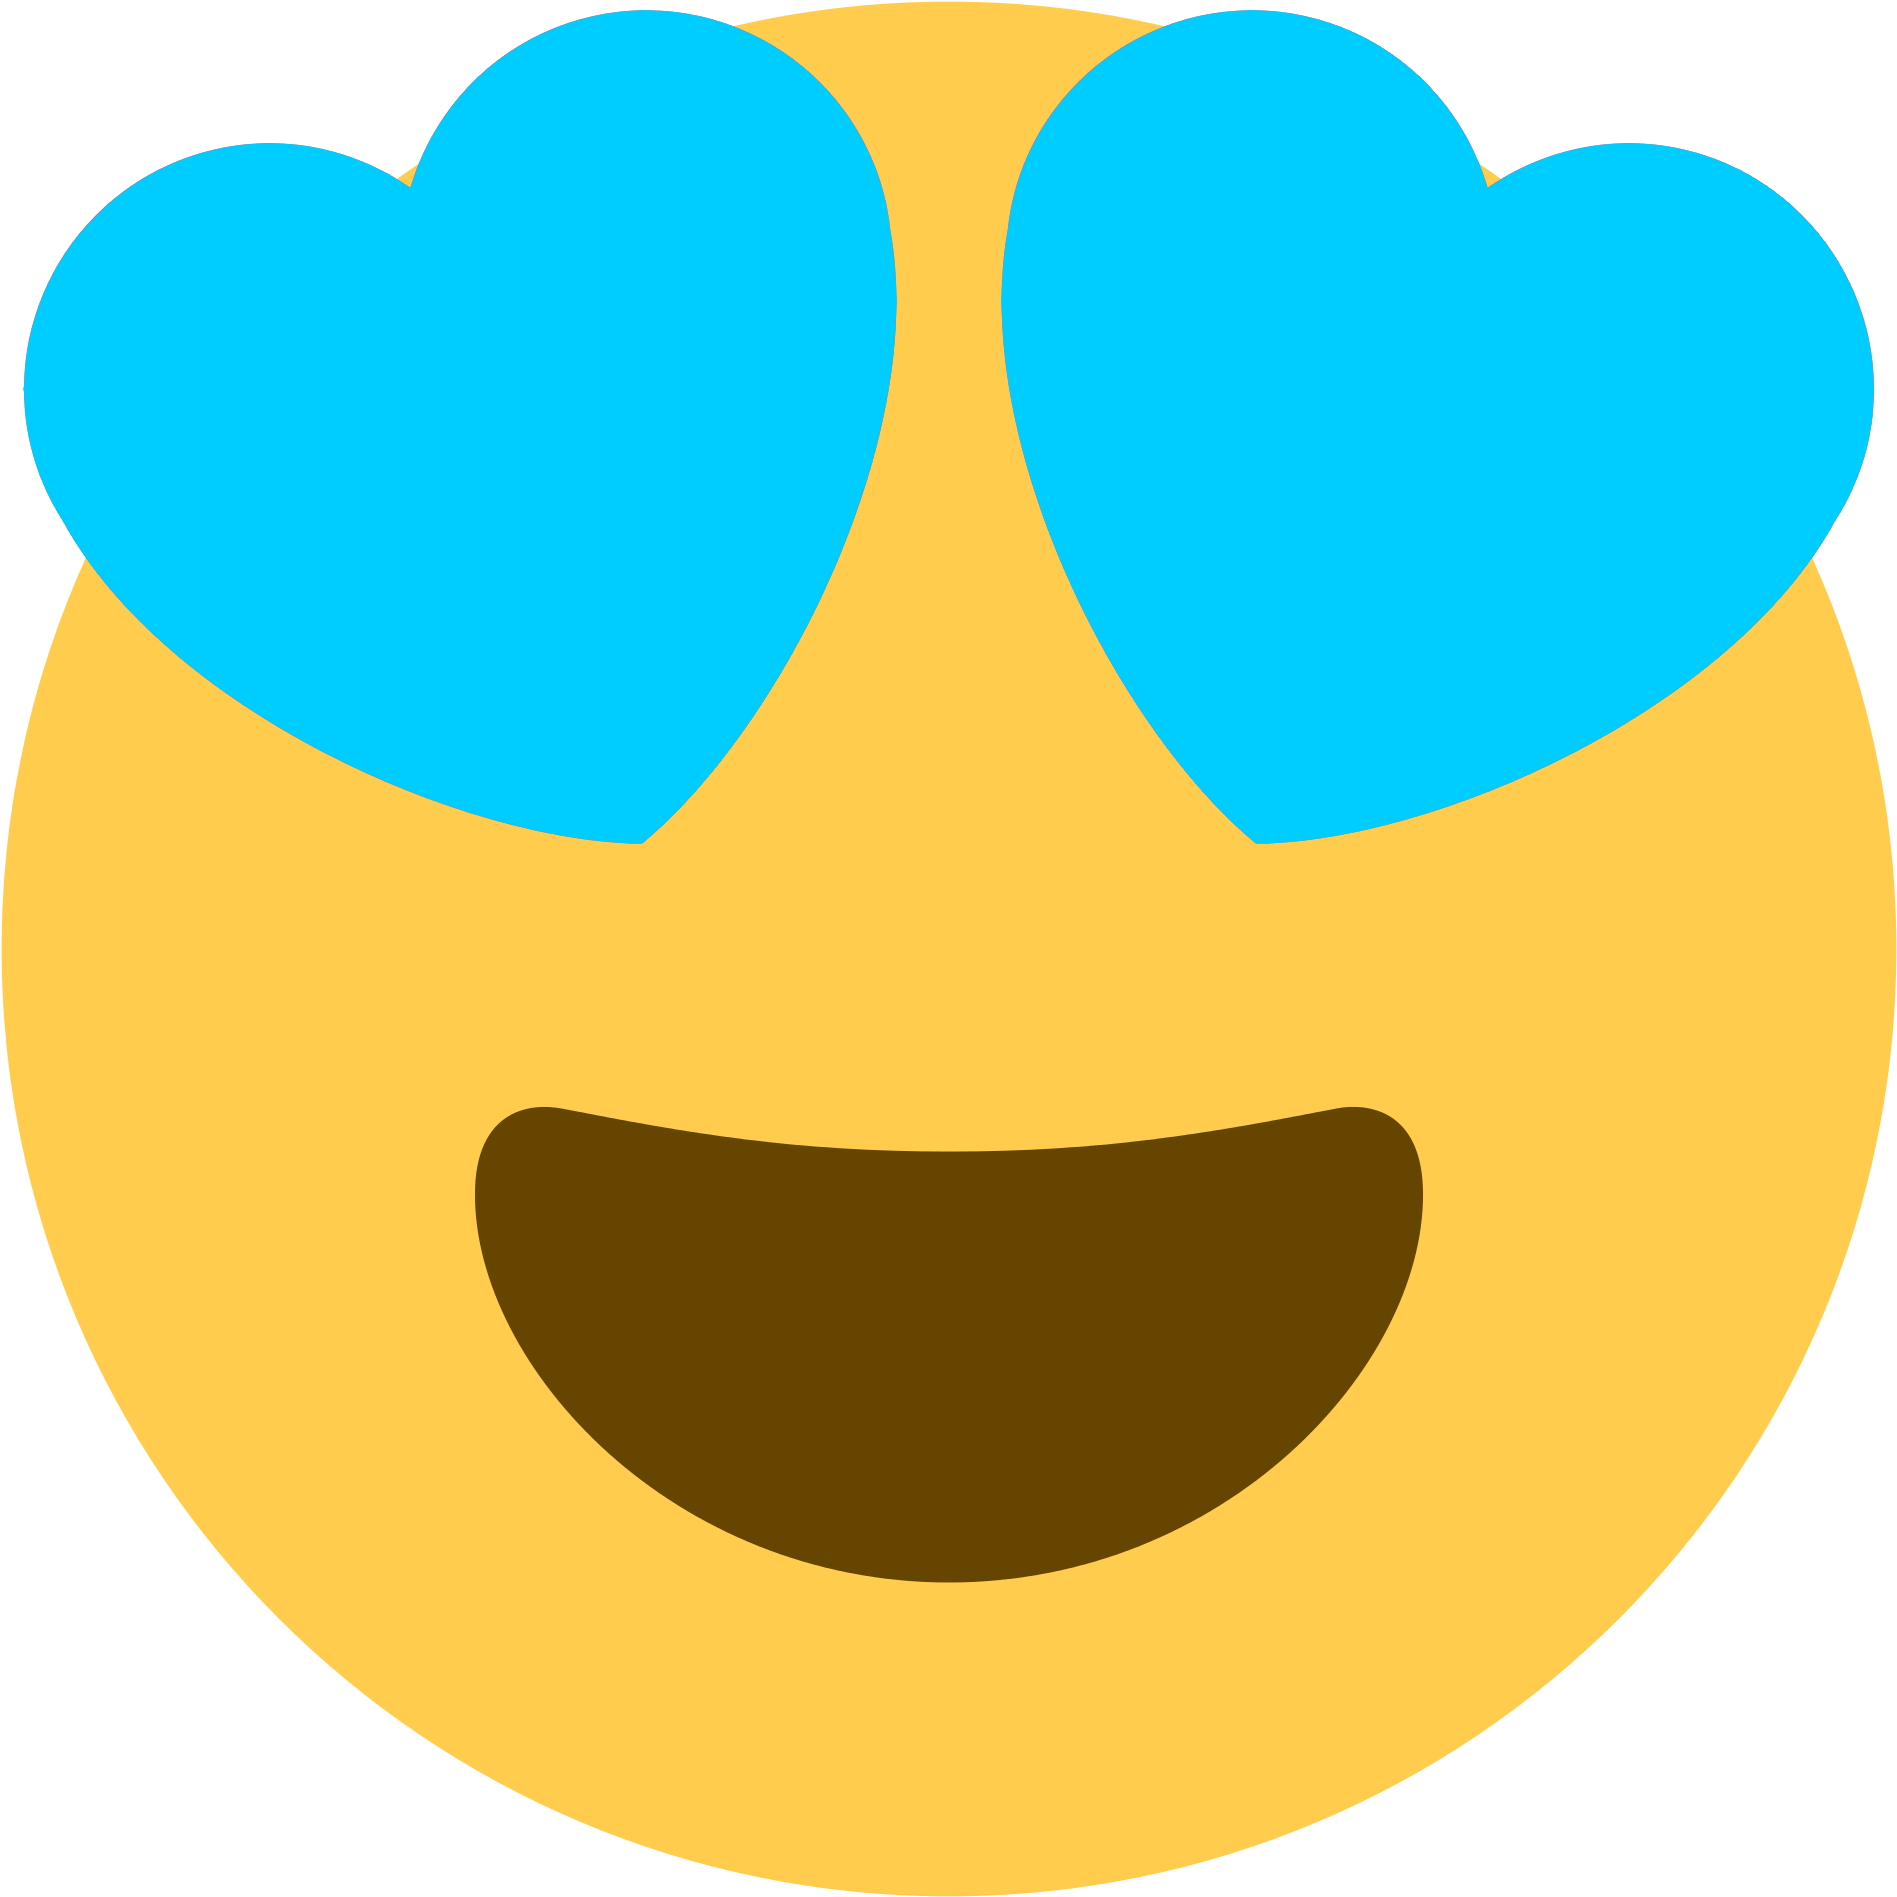 Heart Eye Emoji Transparent Images